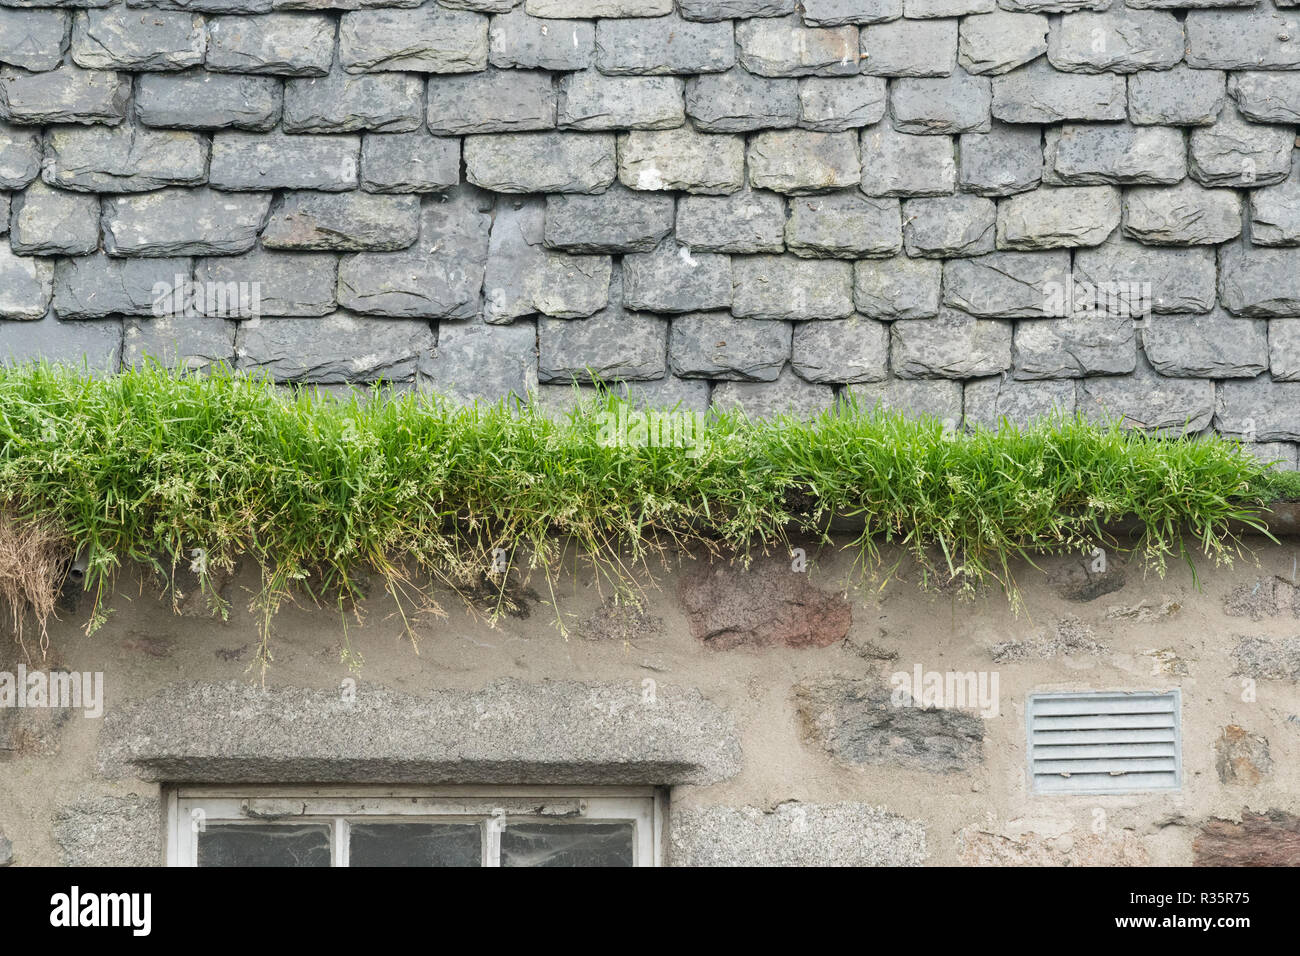 L'herbe pousse sur une goulotte par manque d'entretien - Écosse, Royaume-Uni Banque D'Images